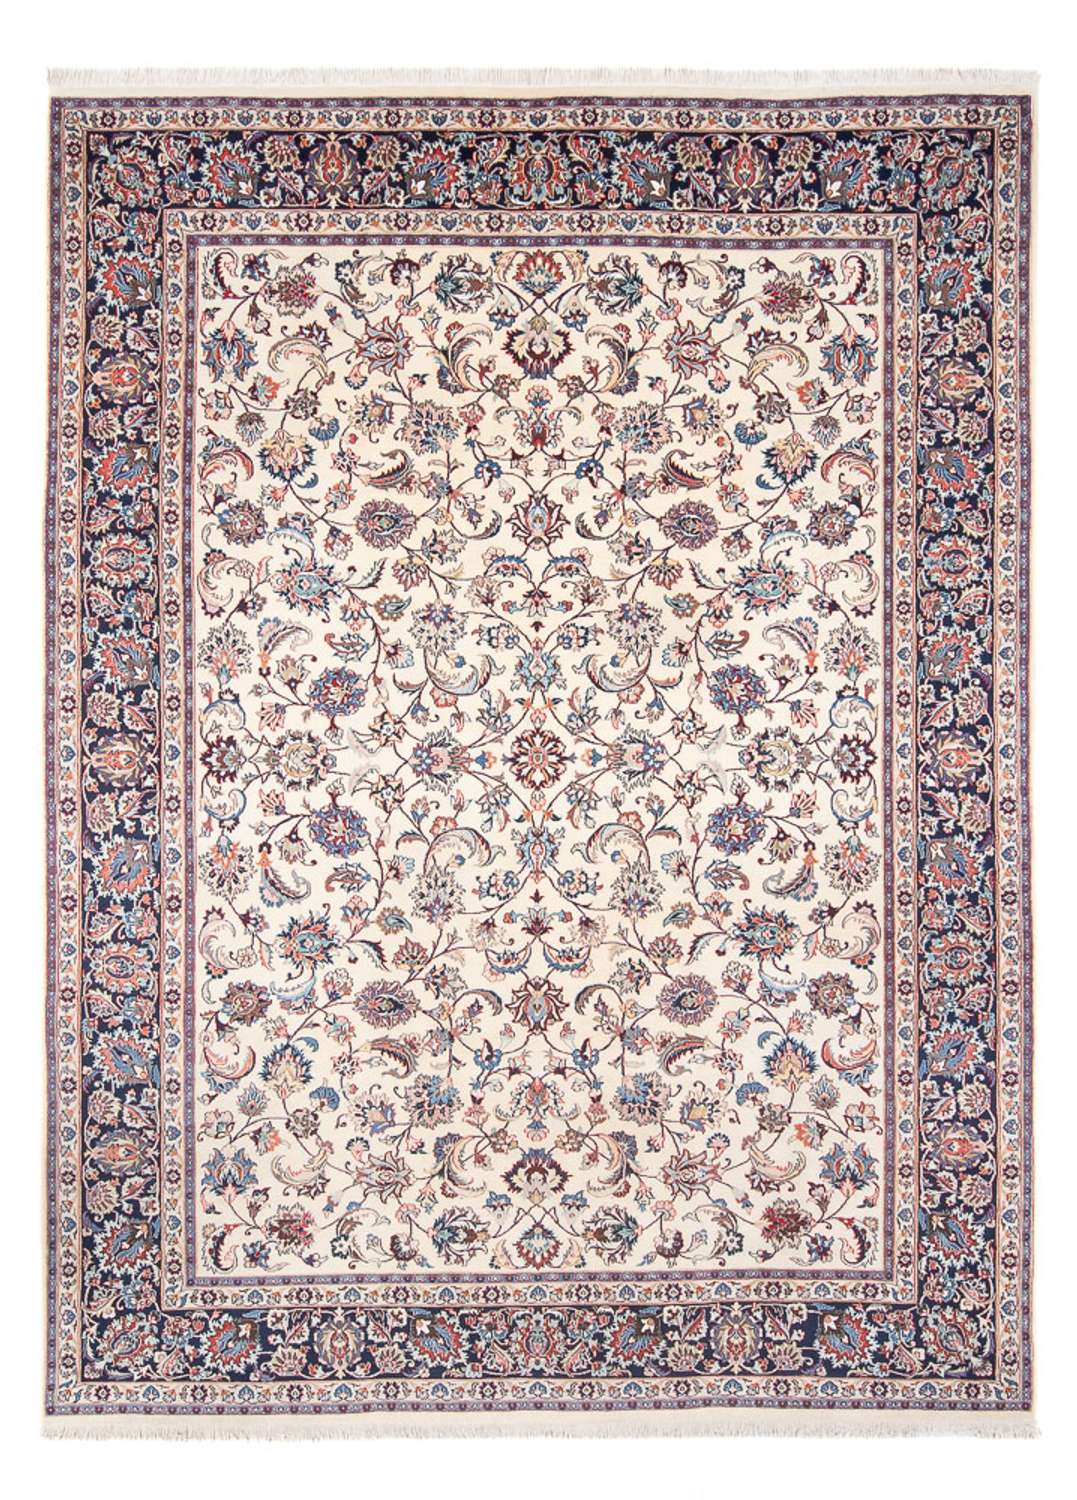 Alfombra persa - Clásica - 326 x 242 cm - crema